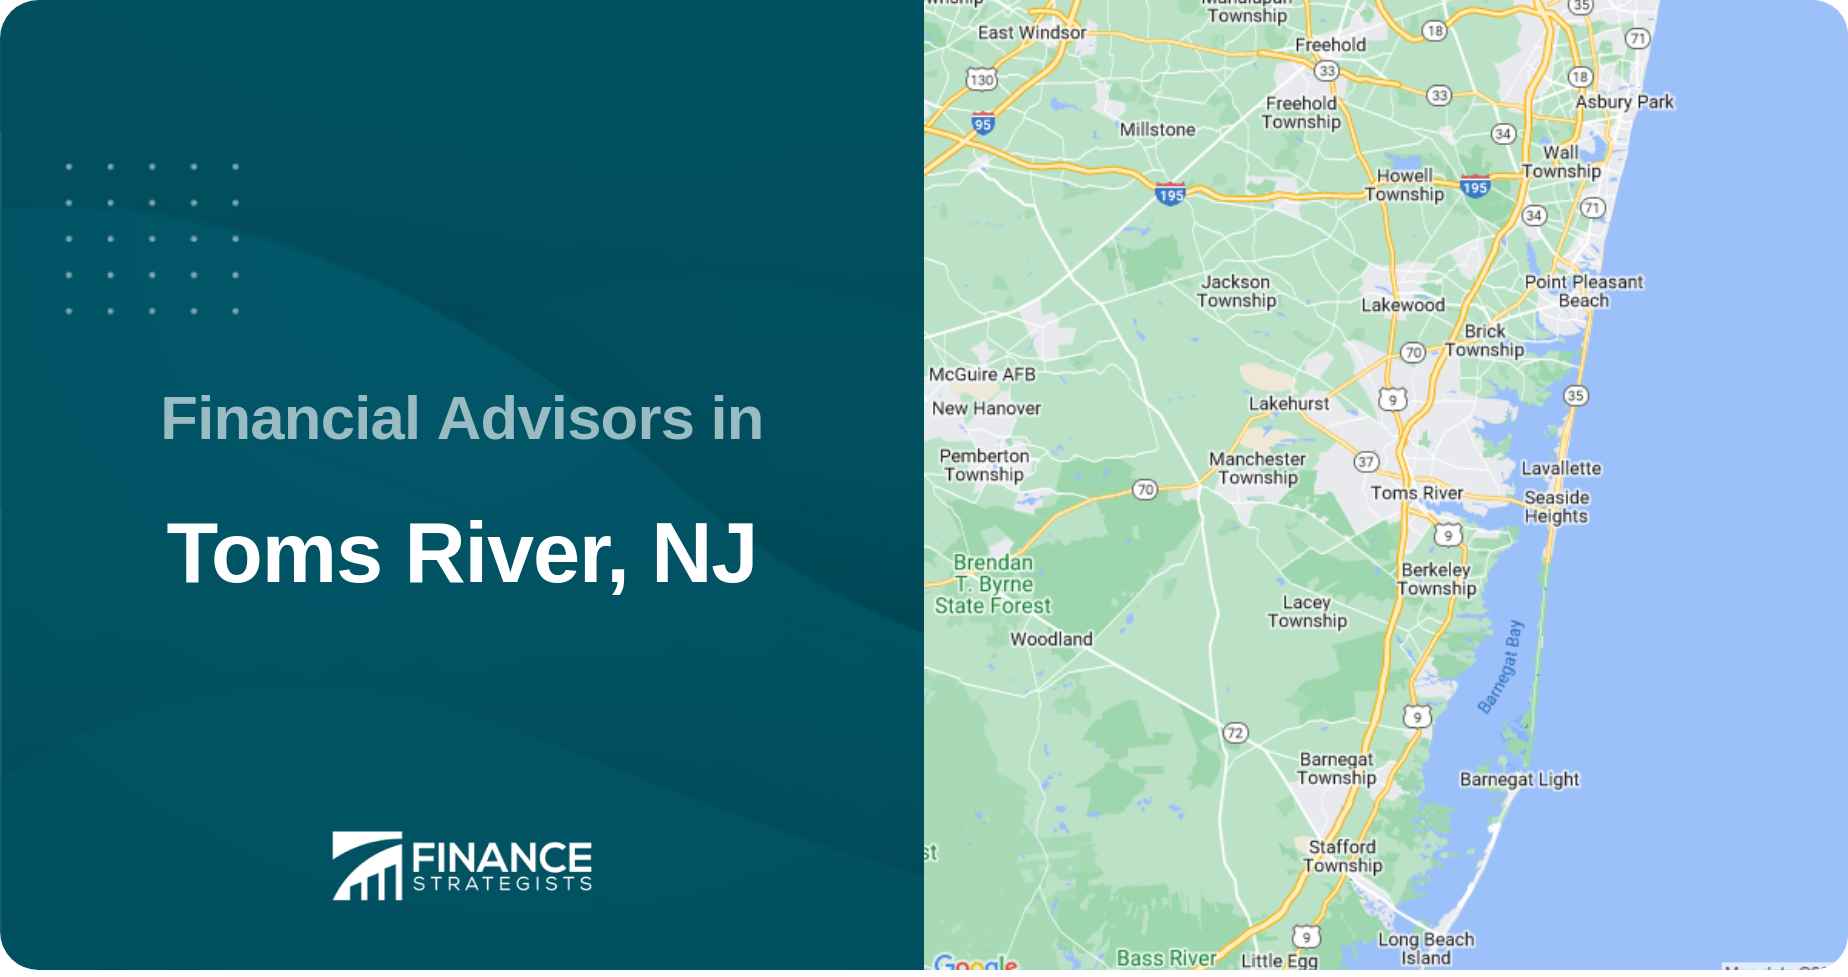 Financial Advisors in Toms River, NJ